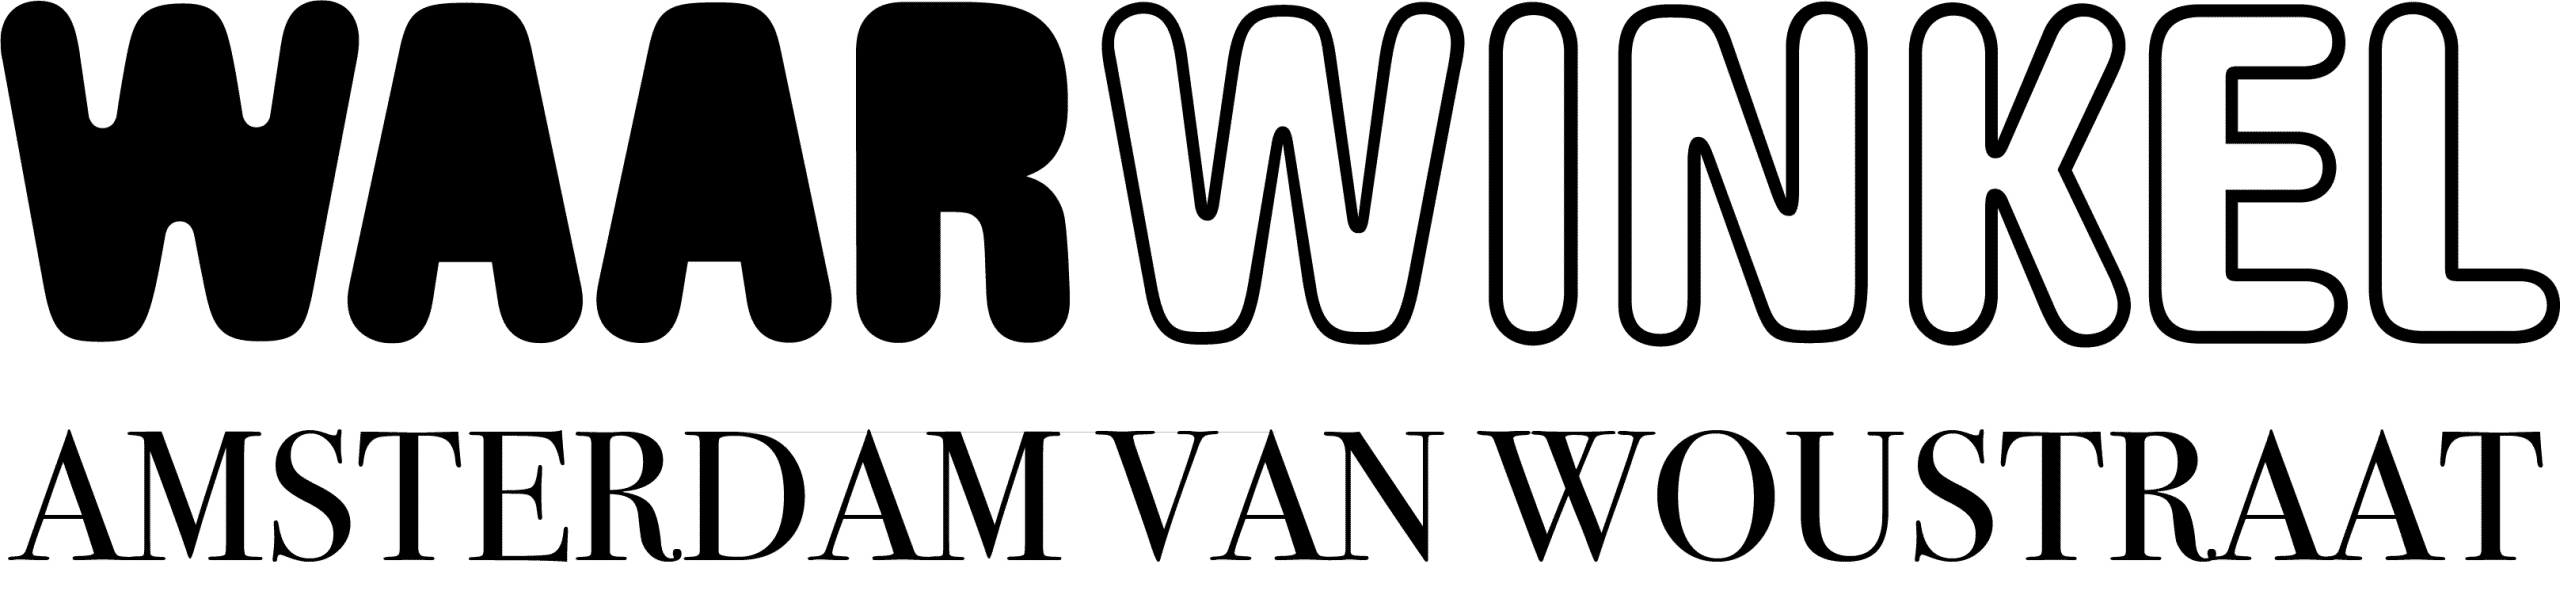 Logo Waarwinkel Amsterdam Van Woustraat Waarwinkel